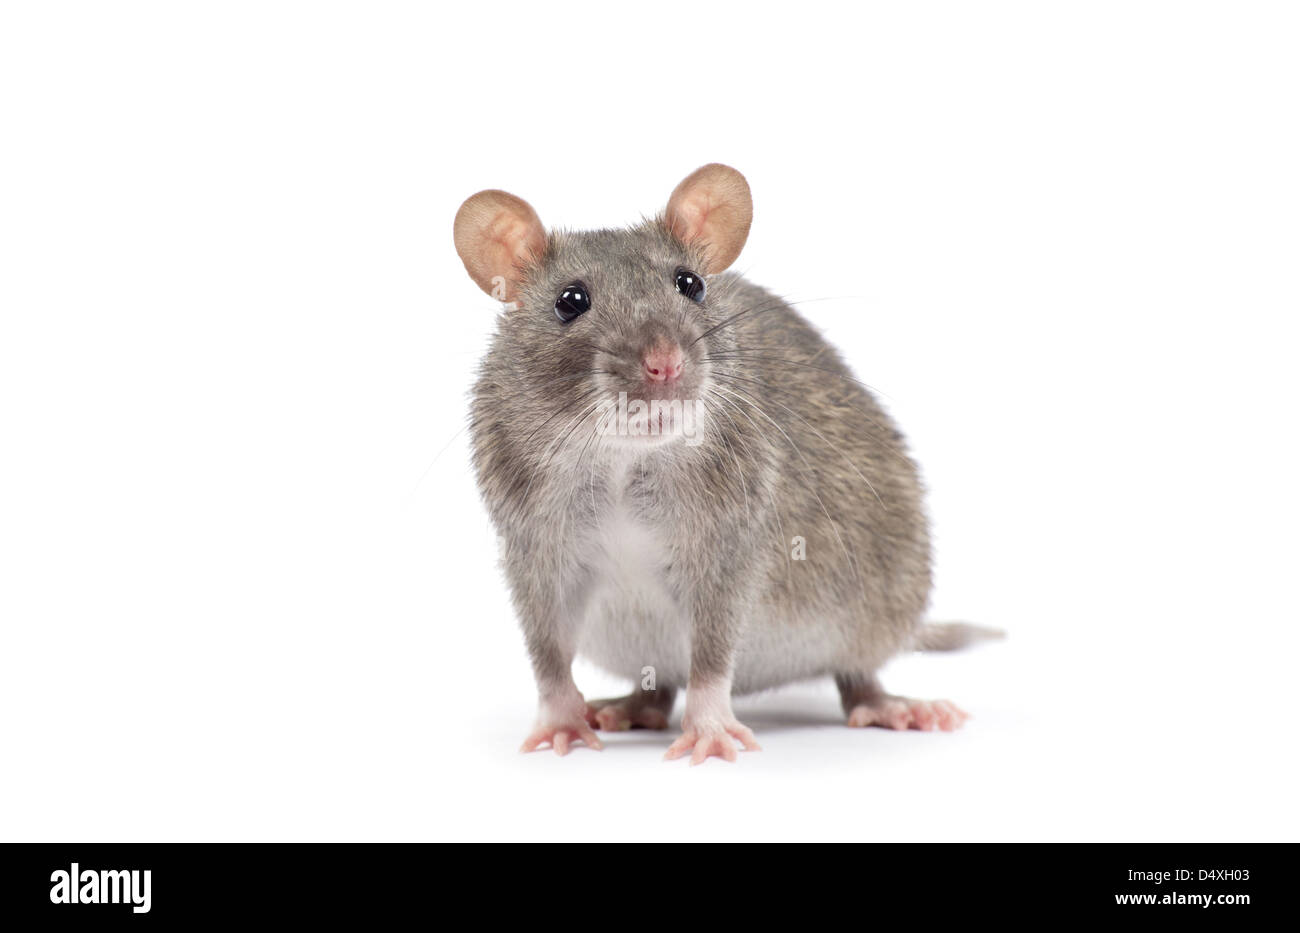 rat isolated on white background Stock Photo